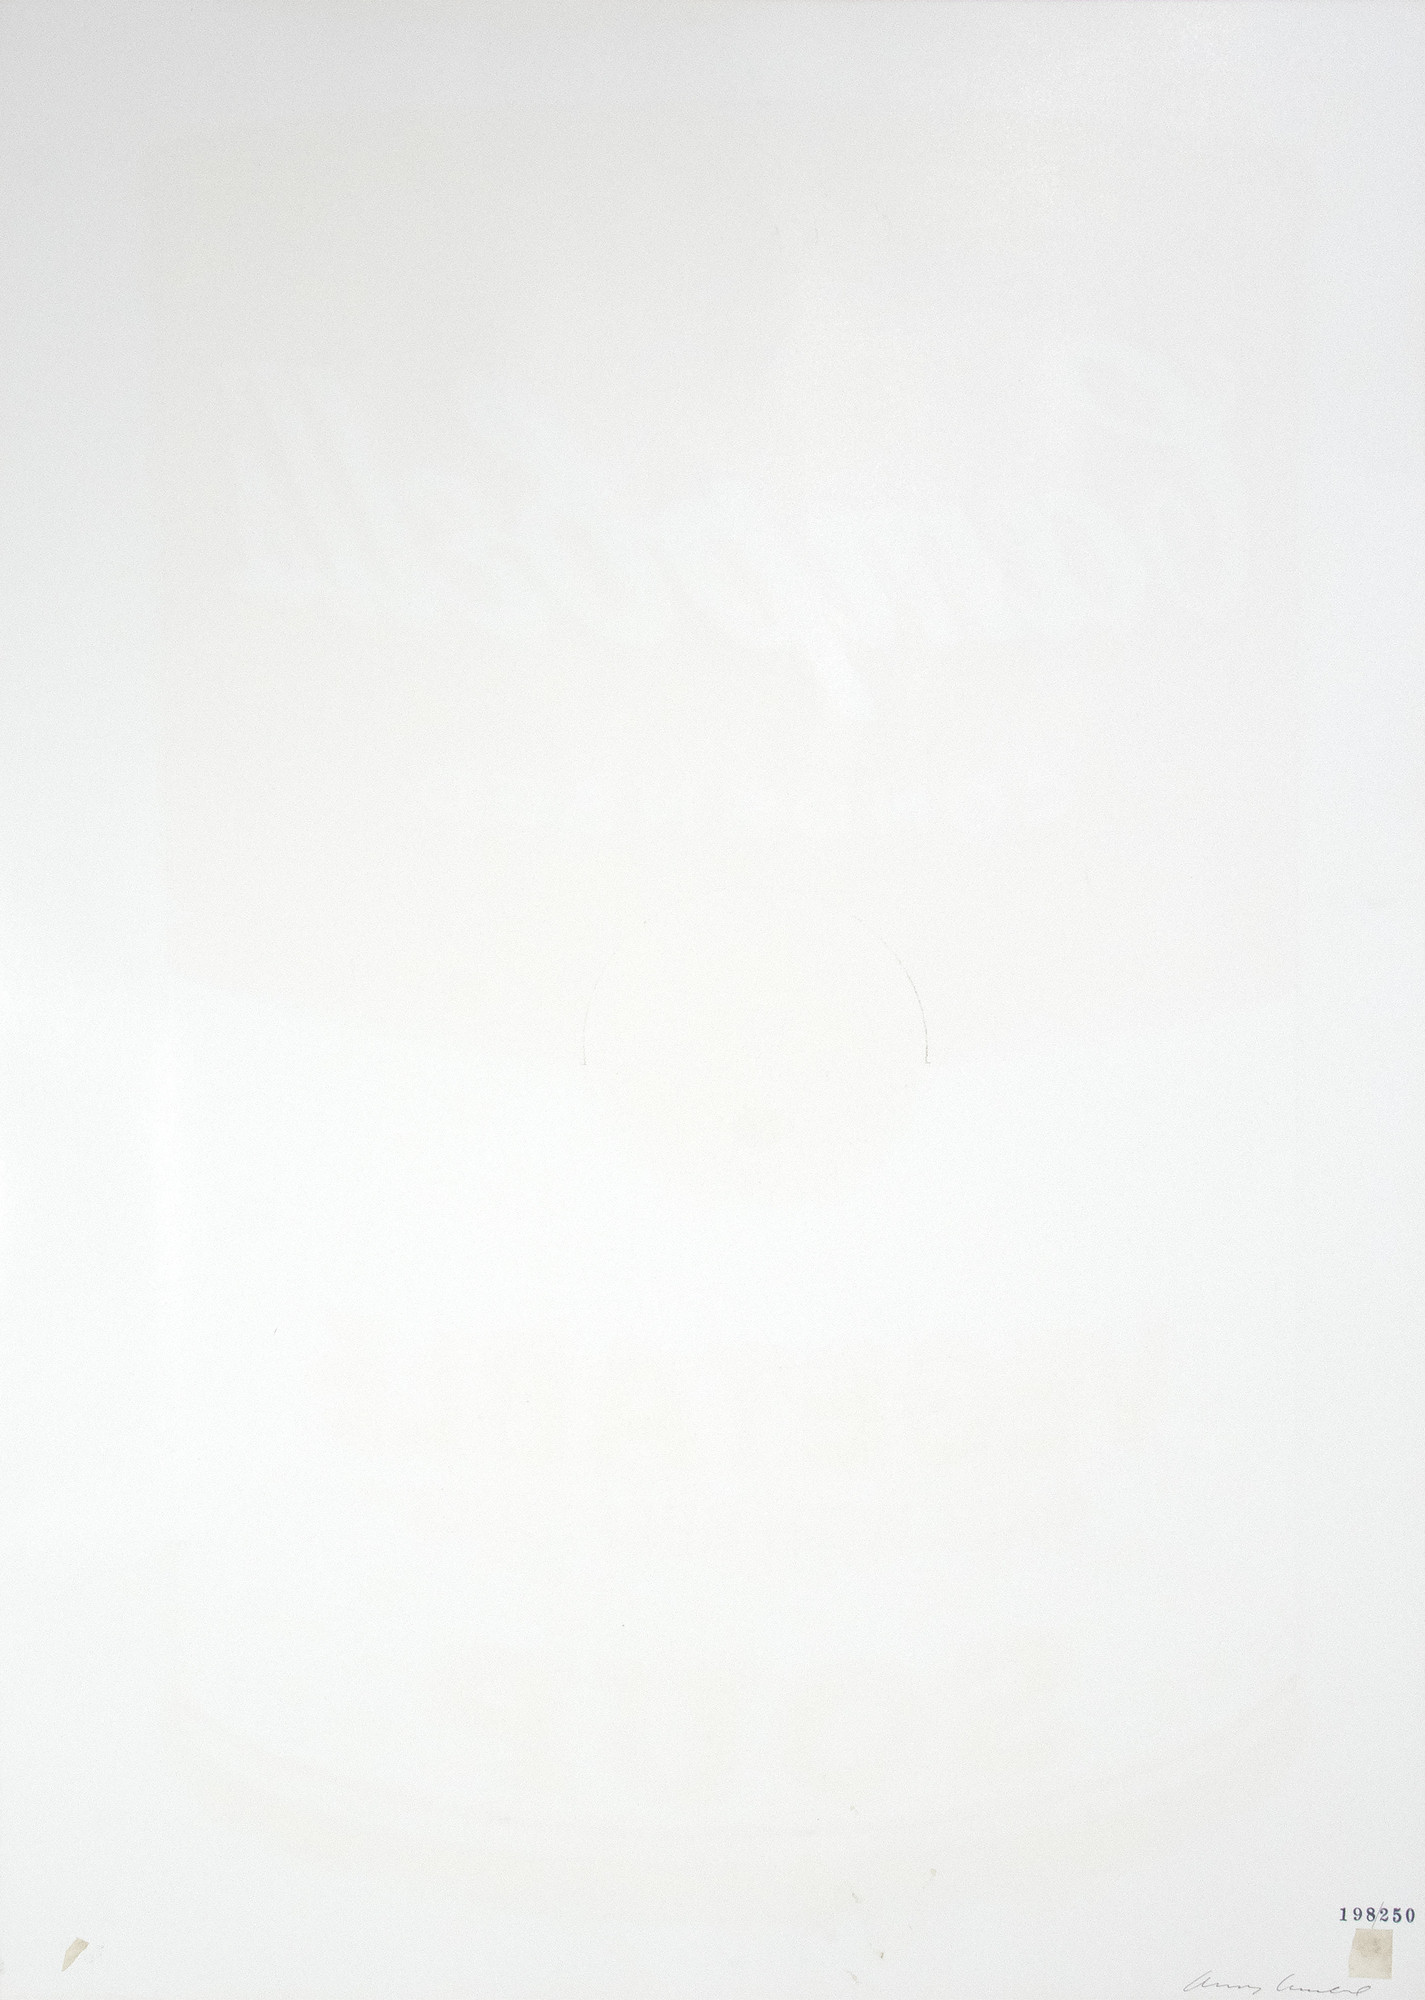 ראוי לציין את המהירות שבה עולם האמנות אימץ את אנדי וורהול לאחר יולי 1962, כאשר ציוריו של שלושים ושישה ציורים של פחיות המרק של קמפבל הוצגו בגלריה פרוס בלוס אנג&#039;לס. בין עבודותיו האחרונות שצוירו ביד, וורהול גילה עד מהרה את מסך המשי, המדיום שאליו הוא מזוהה יותר מכל. בעוד שציורי פחי המרק בעבודת יד נראים מיוצרים באופן מכני, מסך המשי היה תהליך מכני ומסחרי שאפשר לוורהול לייצר חזרות מדויקות ללא הגבלה ווריאציות של נושאי מפתח. כאחד מ-32 הזנים המקוריים, ירקות הם עדיין תופעת תרבות פופ, ומופיעים על כל דבר, החל מצלחות וספלים ועד עניבות, חולצות טריקו וגלשנים.